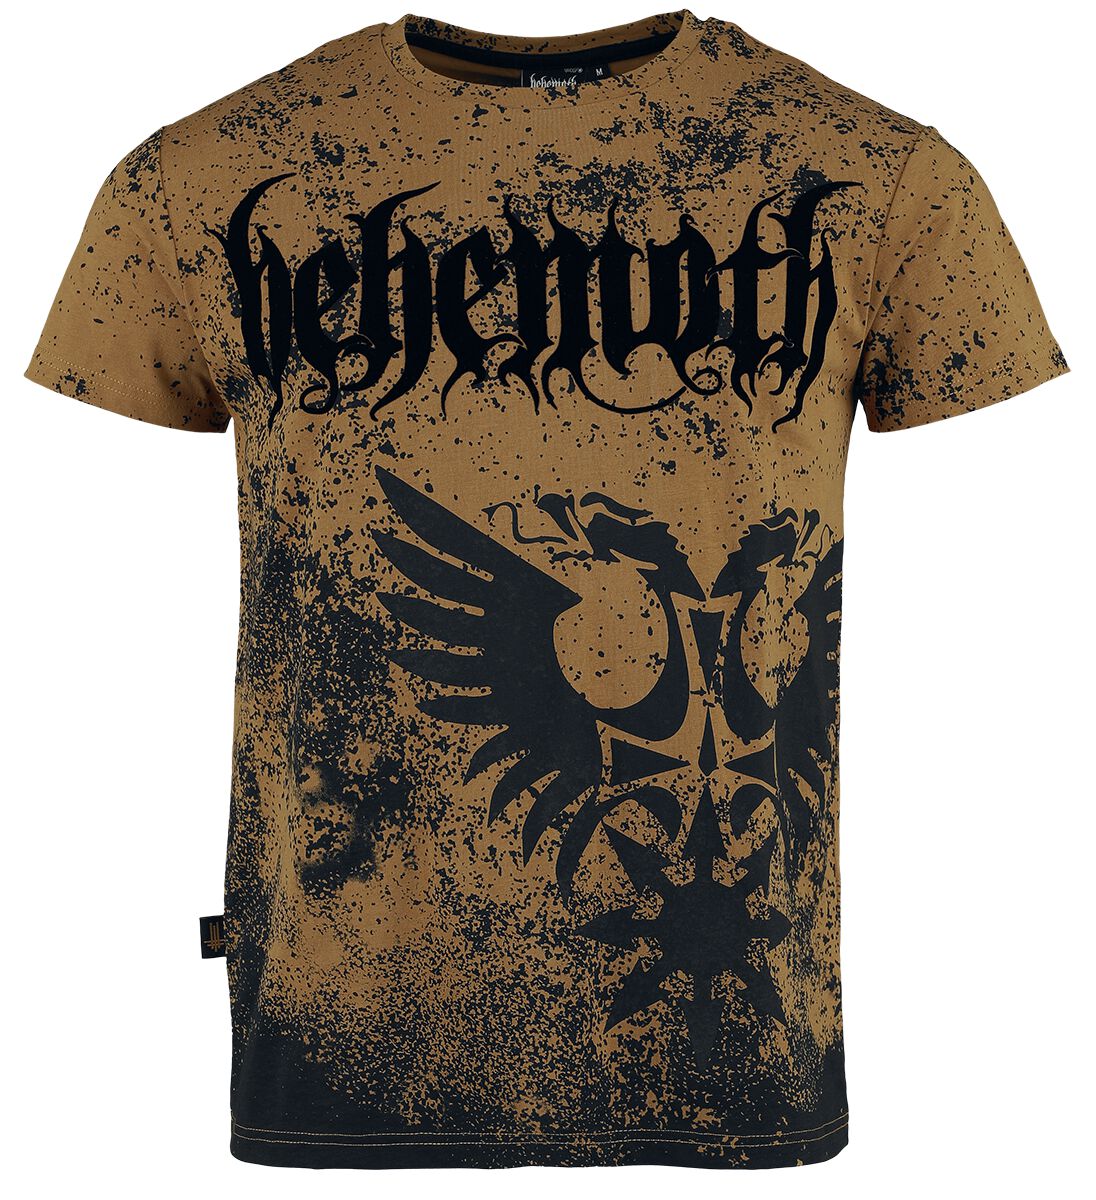 Behemoth T-Shirt - EMP Signature Collection - S bis XXL - für Männer - Größe XXL - braun/schwarz  - EMP exklusives Merchandise!